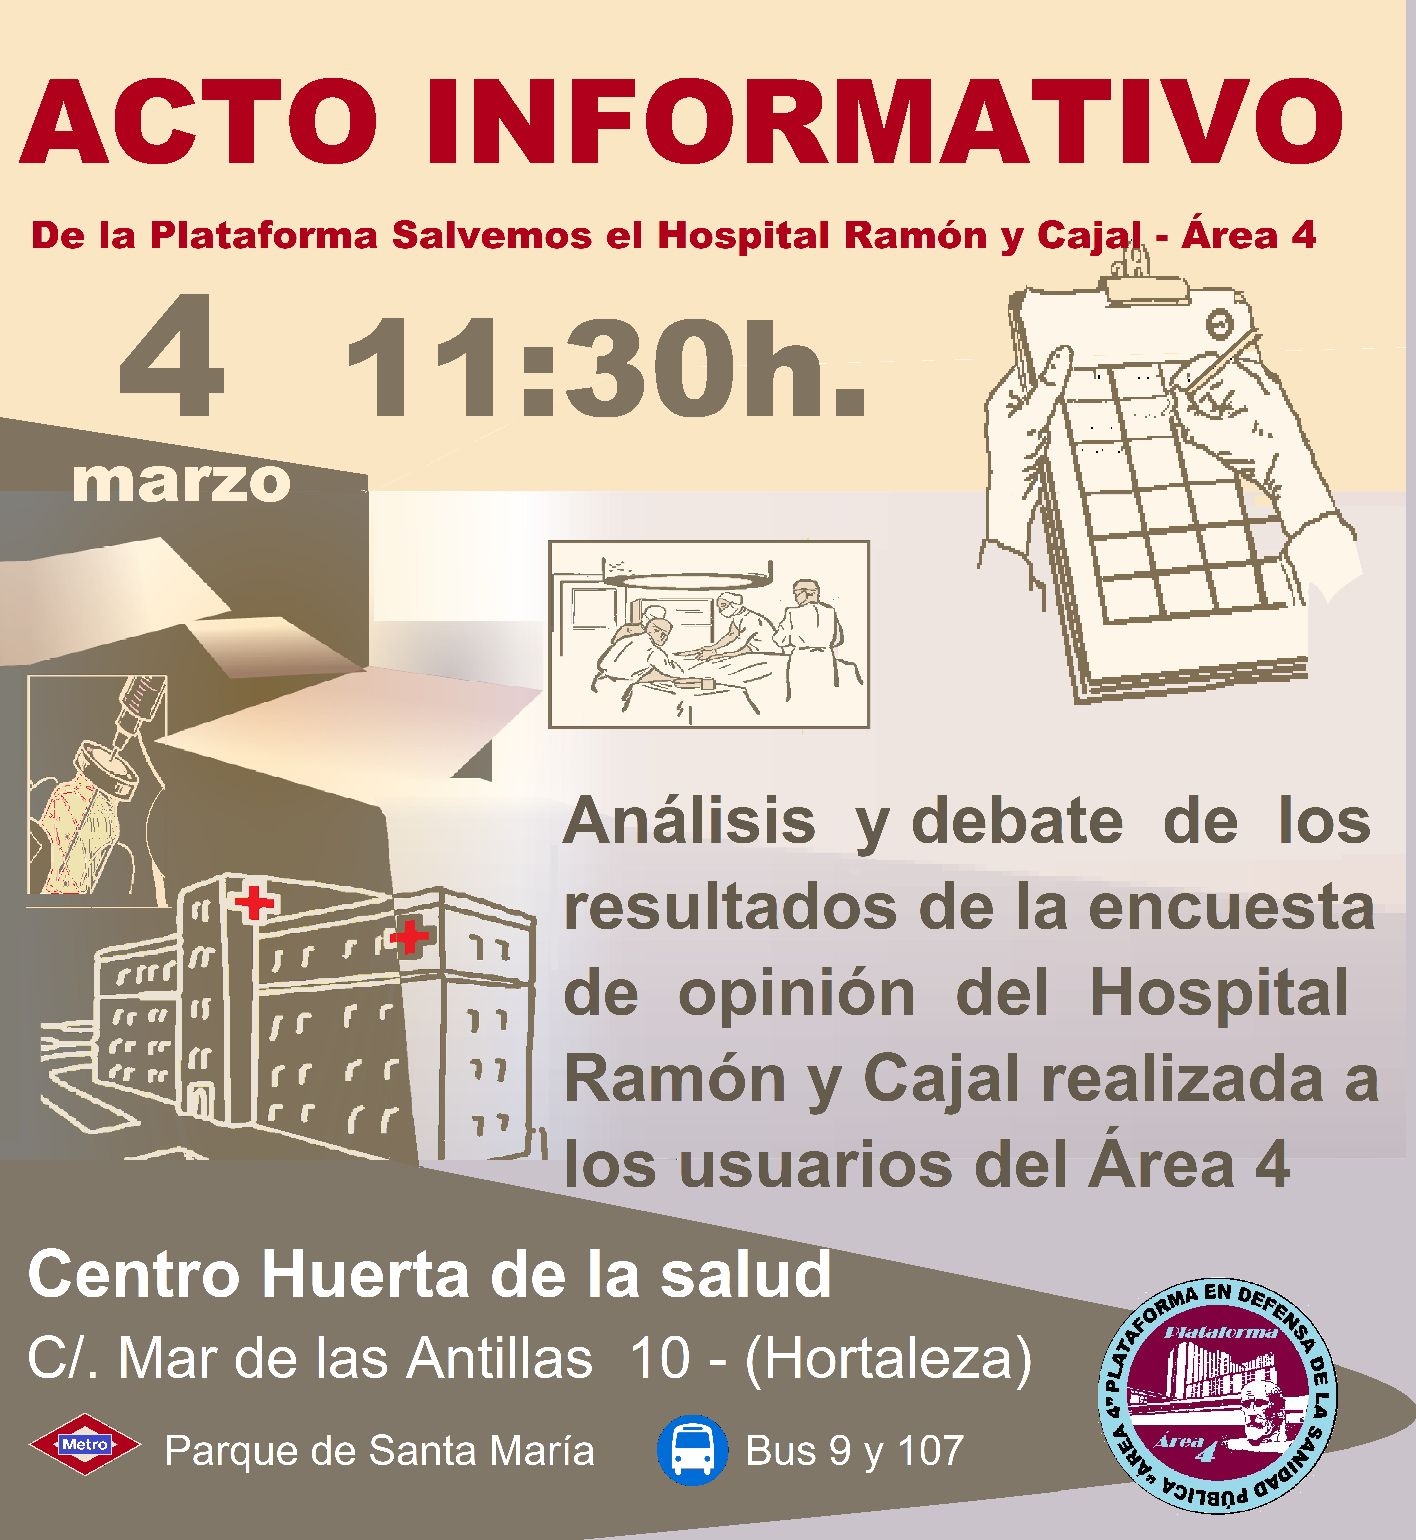 Acto informativo en Hortaleza sobre el Hospital Ramón y Cajal